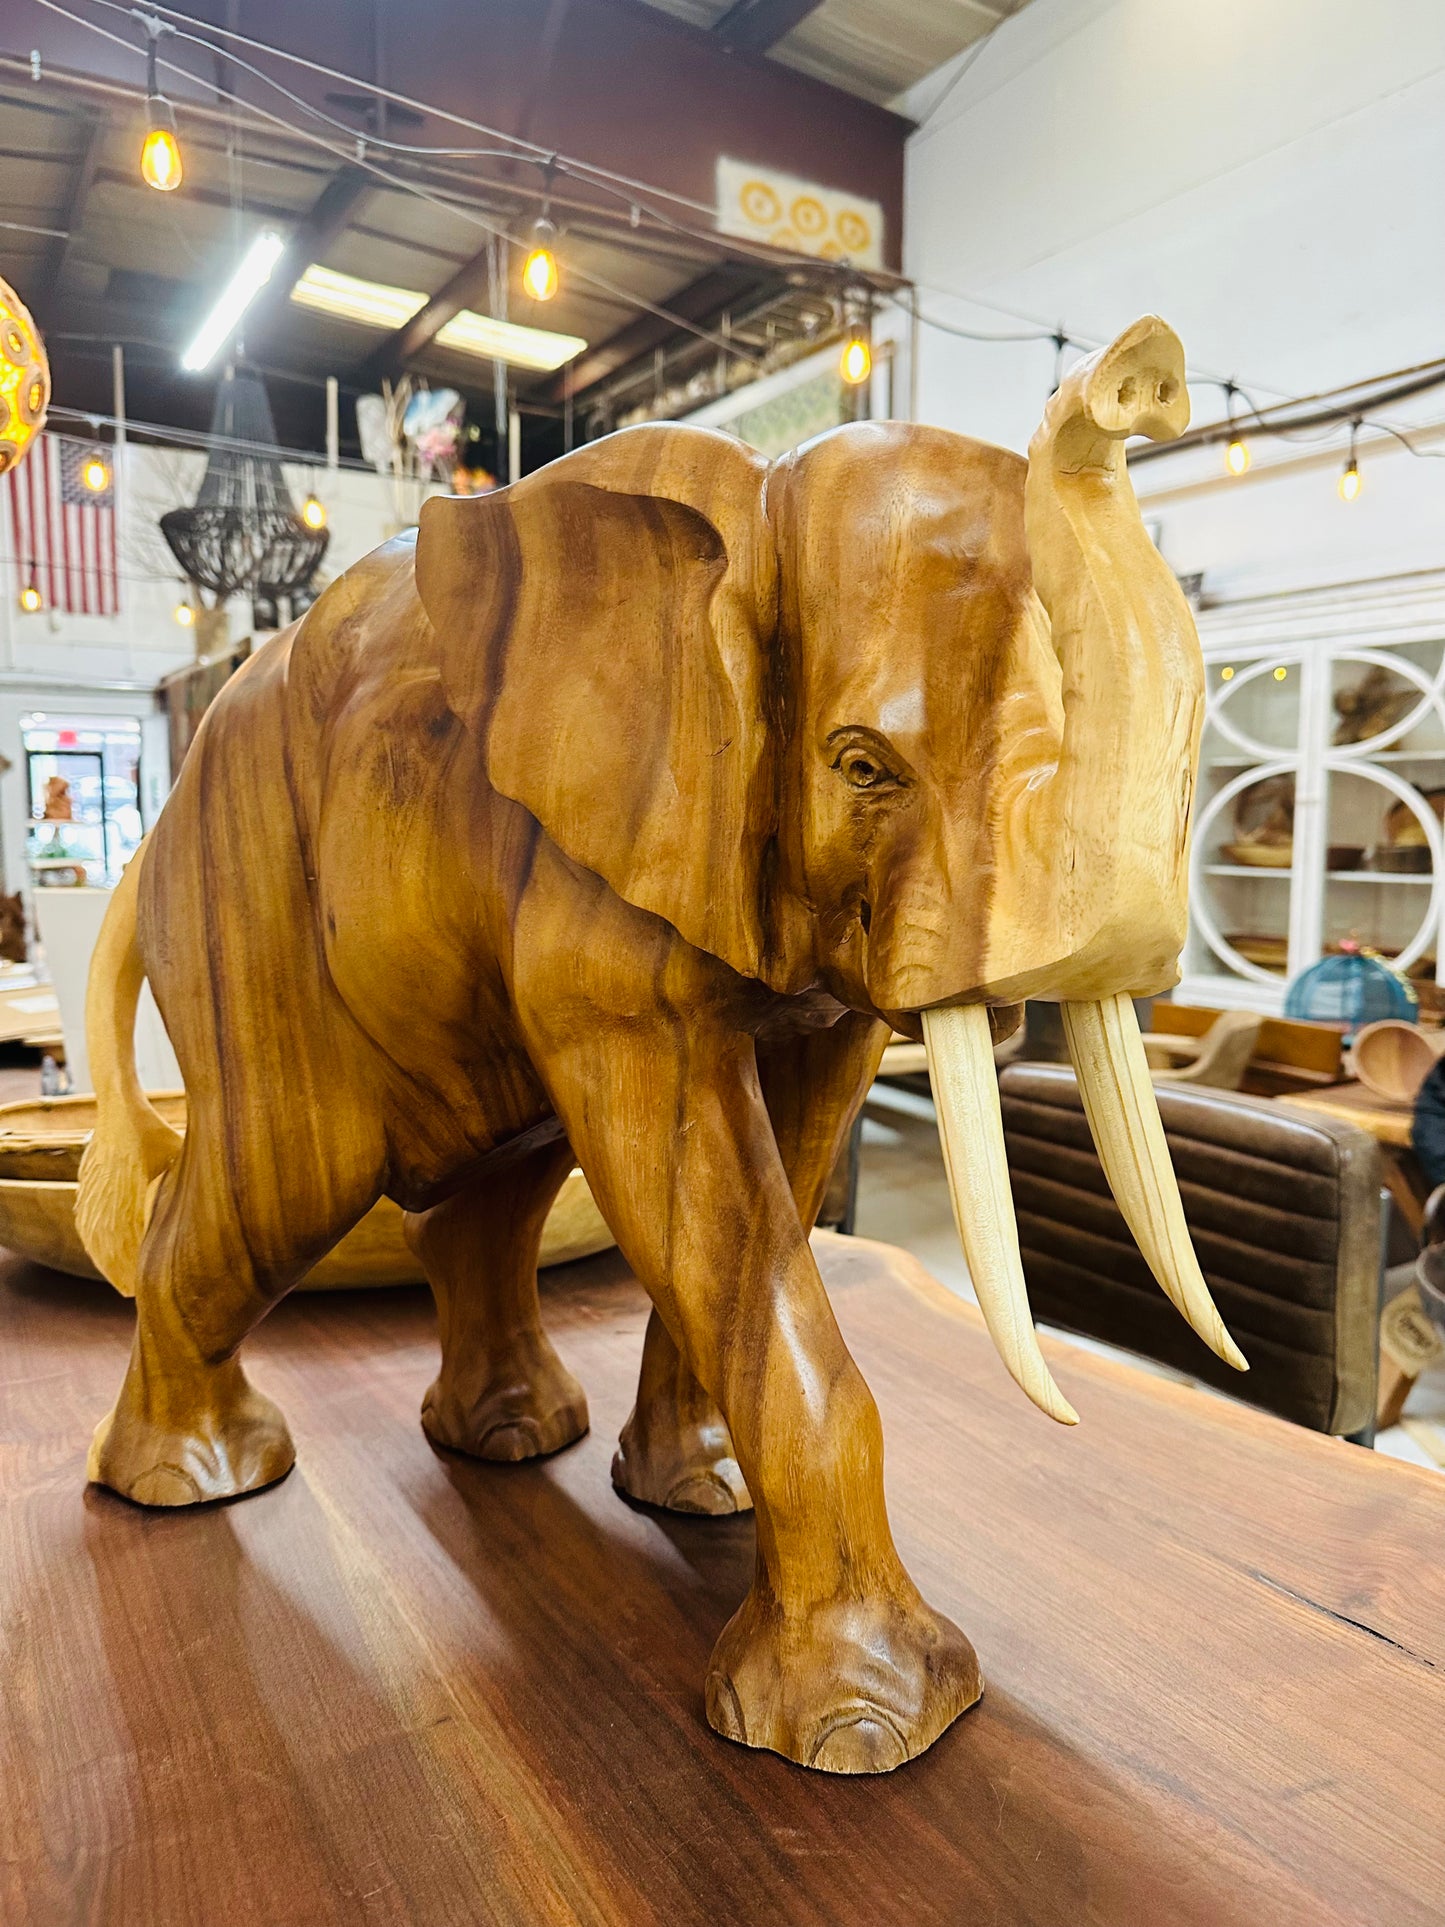 Carved wood elephant - Restoration Oak